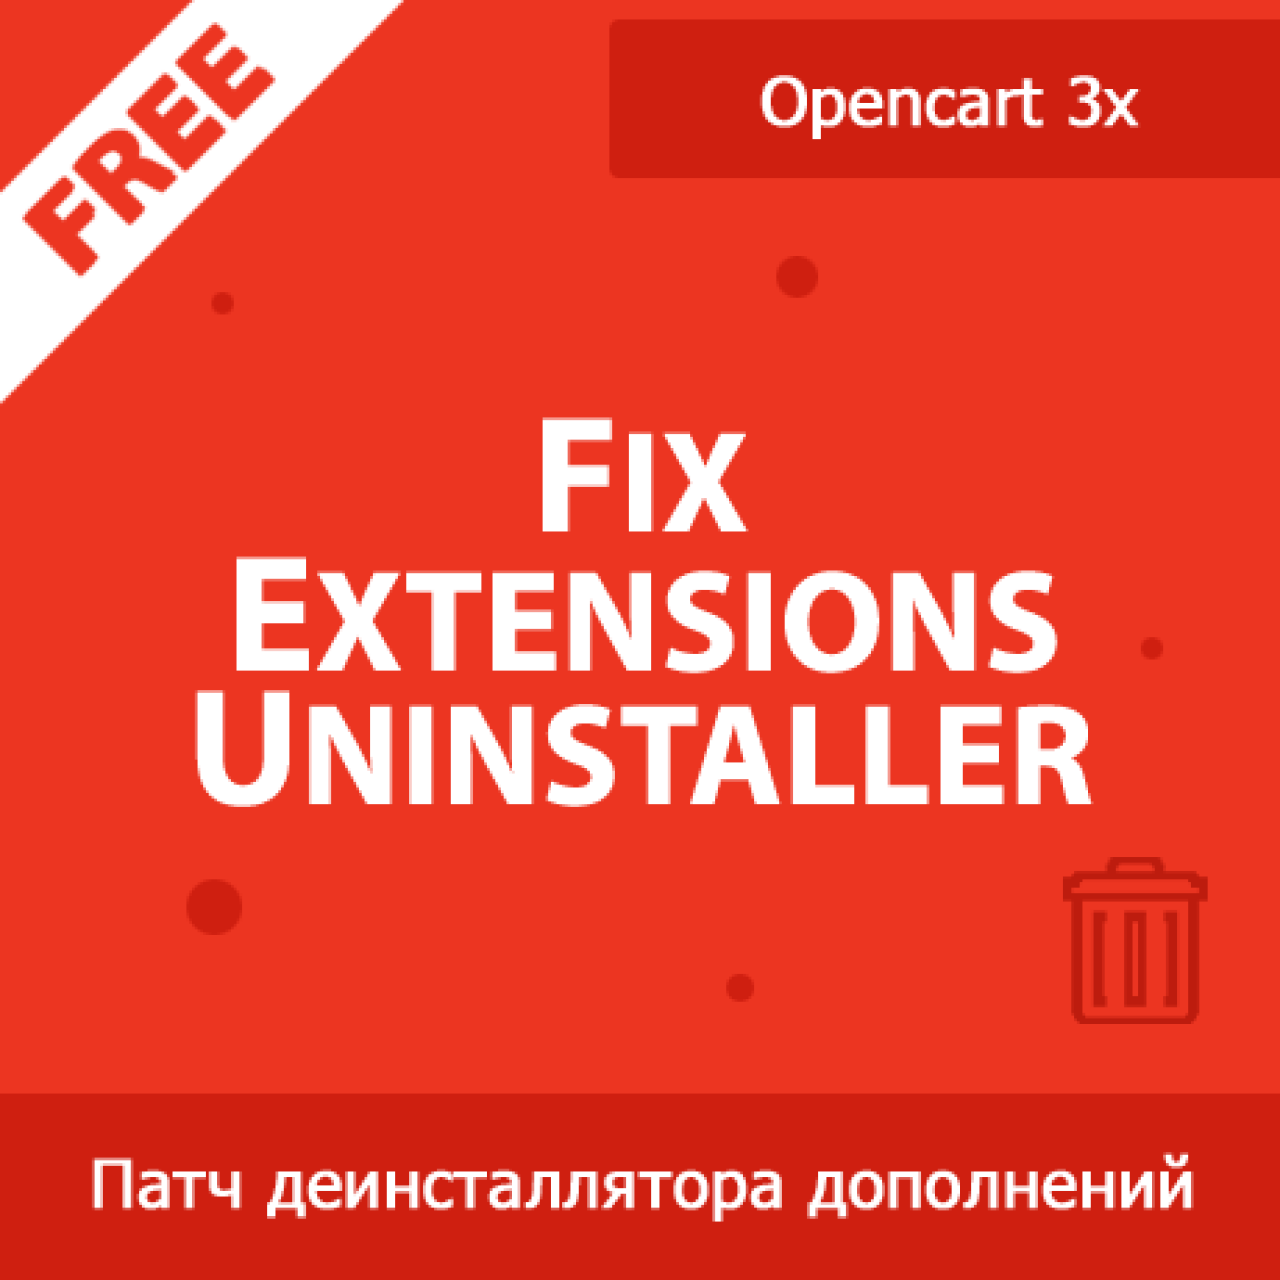 Fix Extensions Uninstaller - исправление деинсталлятора дополнений в Opencart 3x из категории Админка для CMS OpenCart (ОпенКарт)